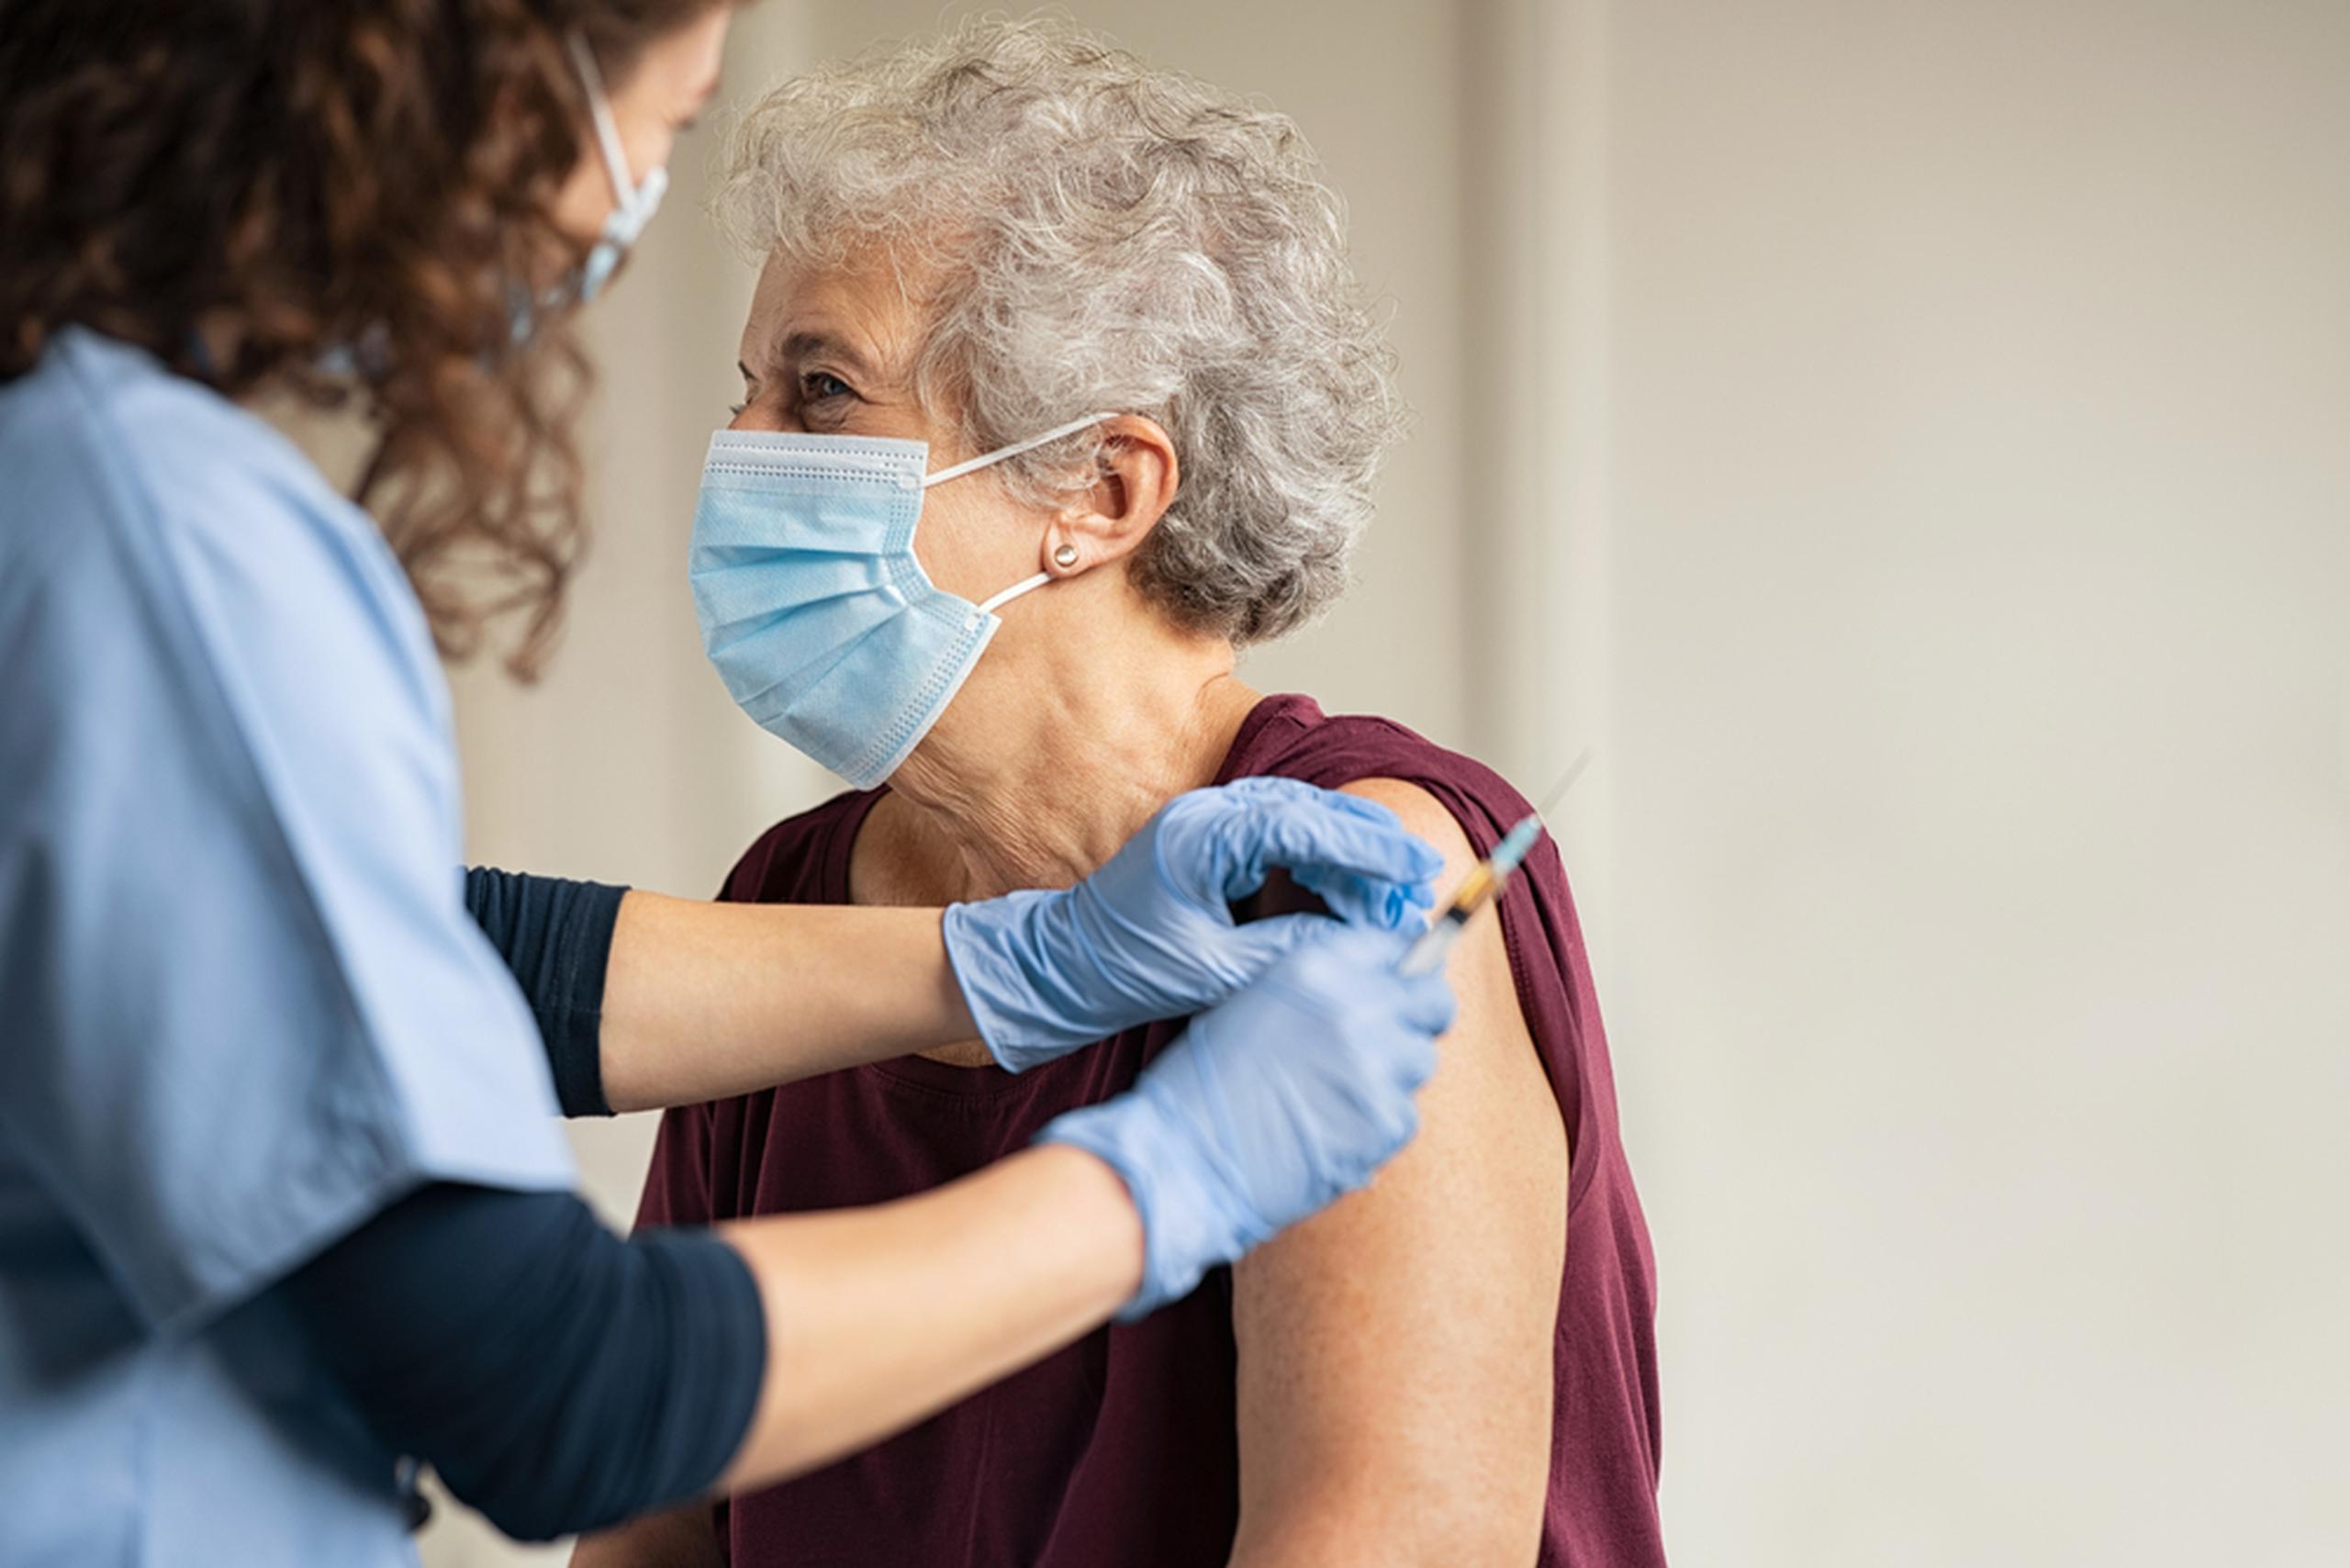 La vacunación contra la influenza es una medida de salud vital en esta época, y ahora más, con la pandemia del COVID-19.